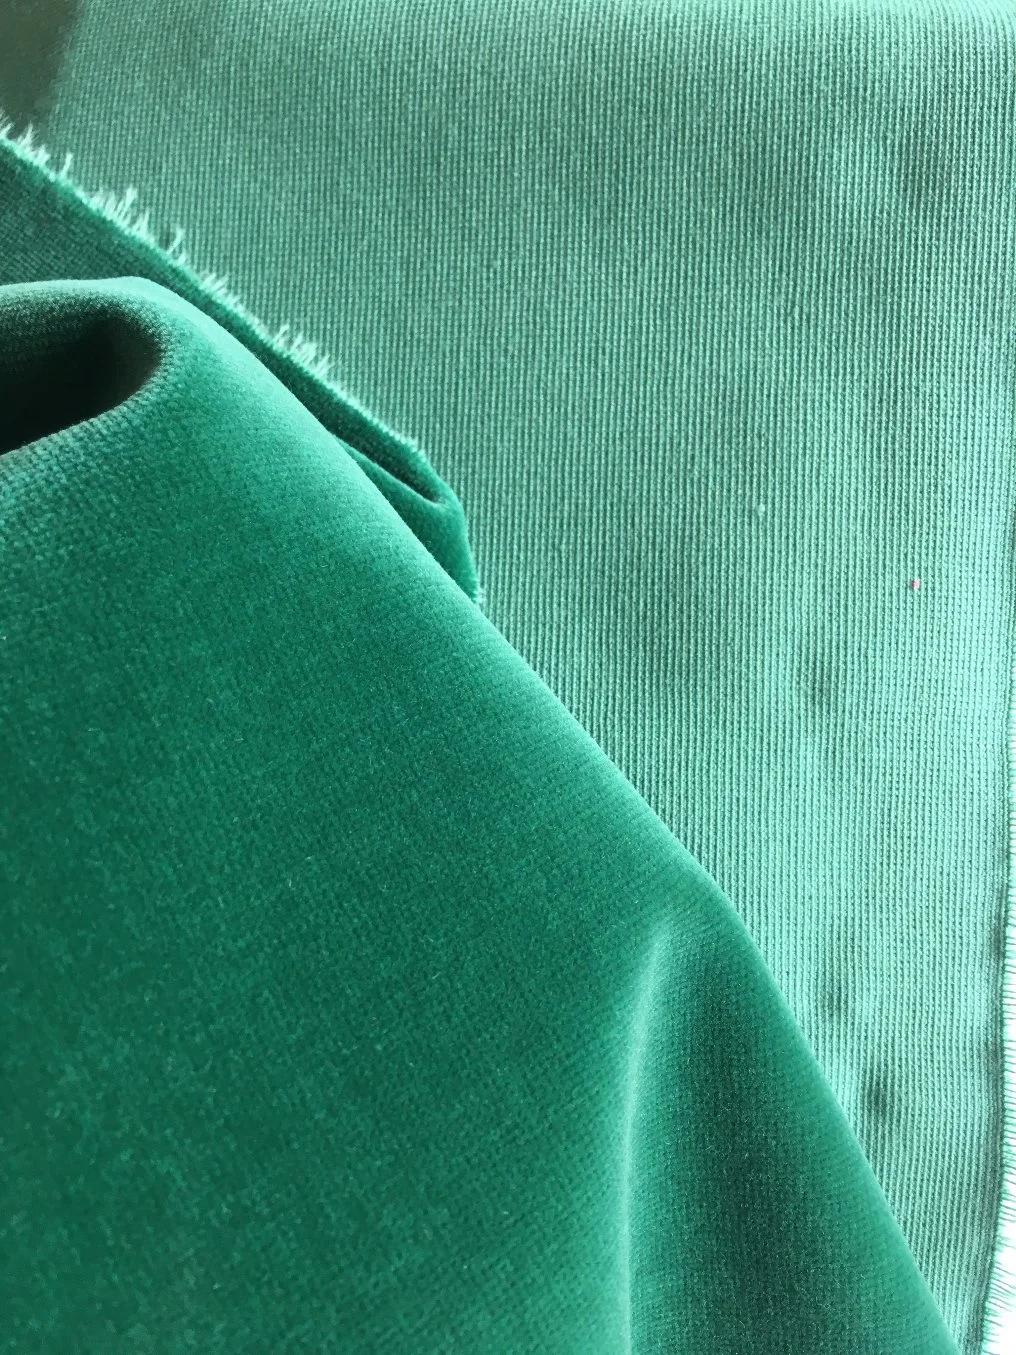 Jacquard Woven Velvet 53%Viscose 23%Cotton 24%Polyester Cut Pile Velvet Highend Velvet with Ready Stock Furniture Fabric Upholstery Fabric (DN)